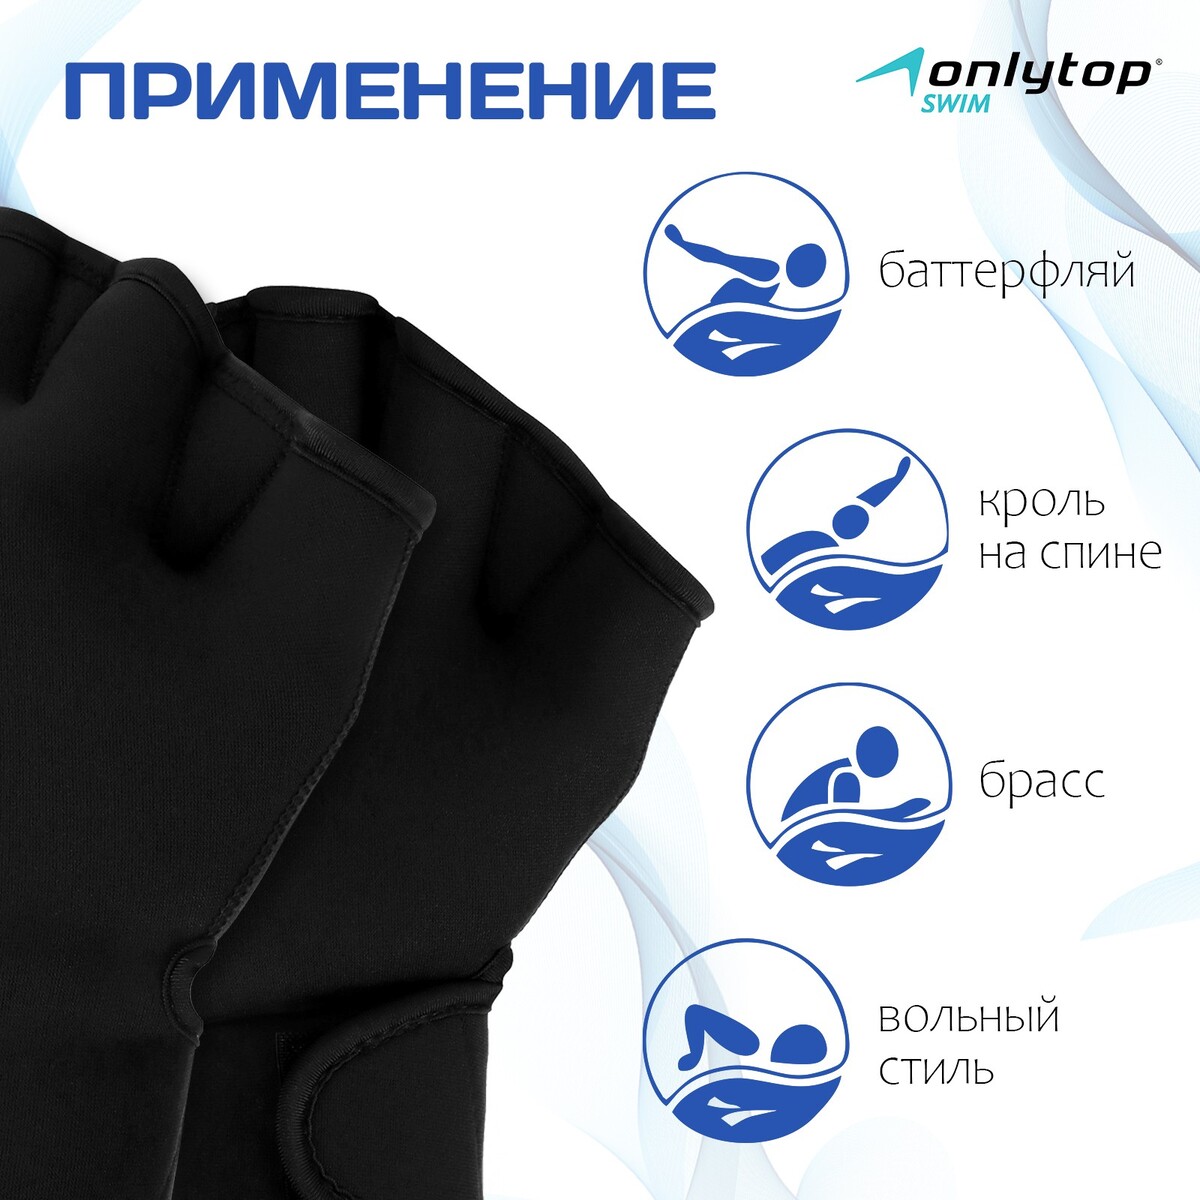 фото Перчатки для плавания onlytop, неопрен, 2.5 мм, р. s, цвет черный